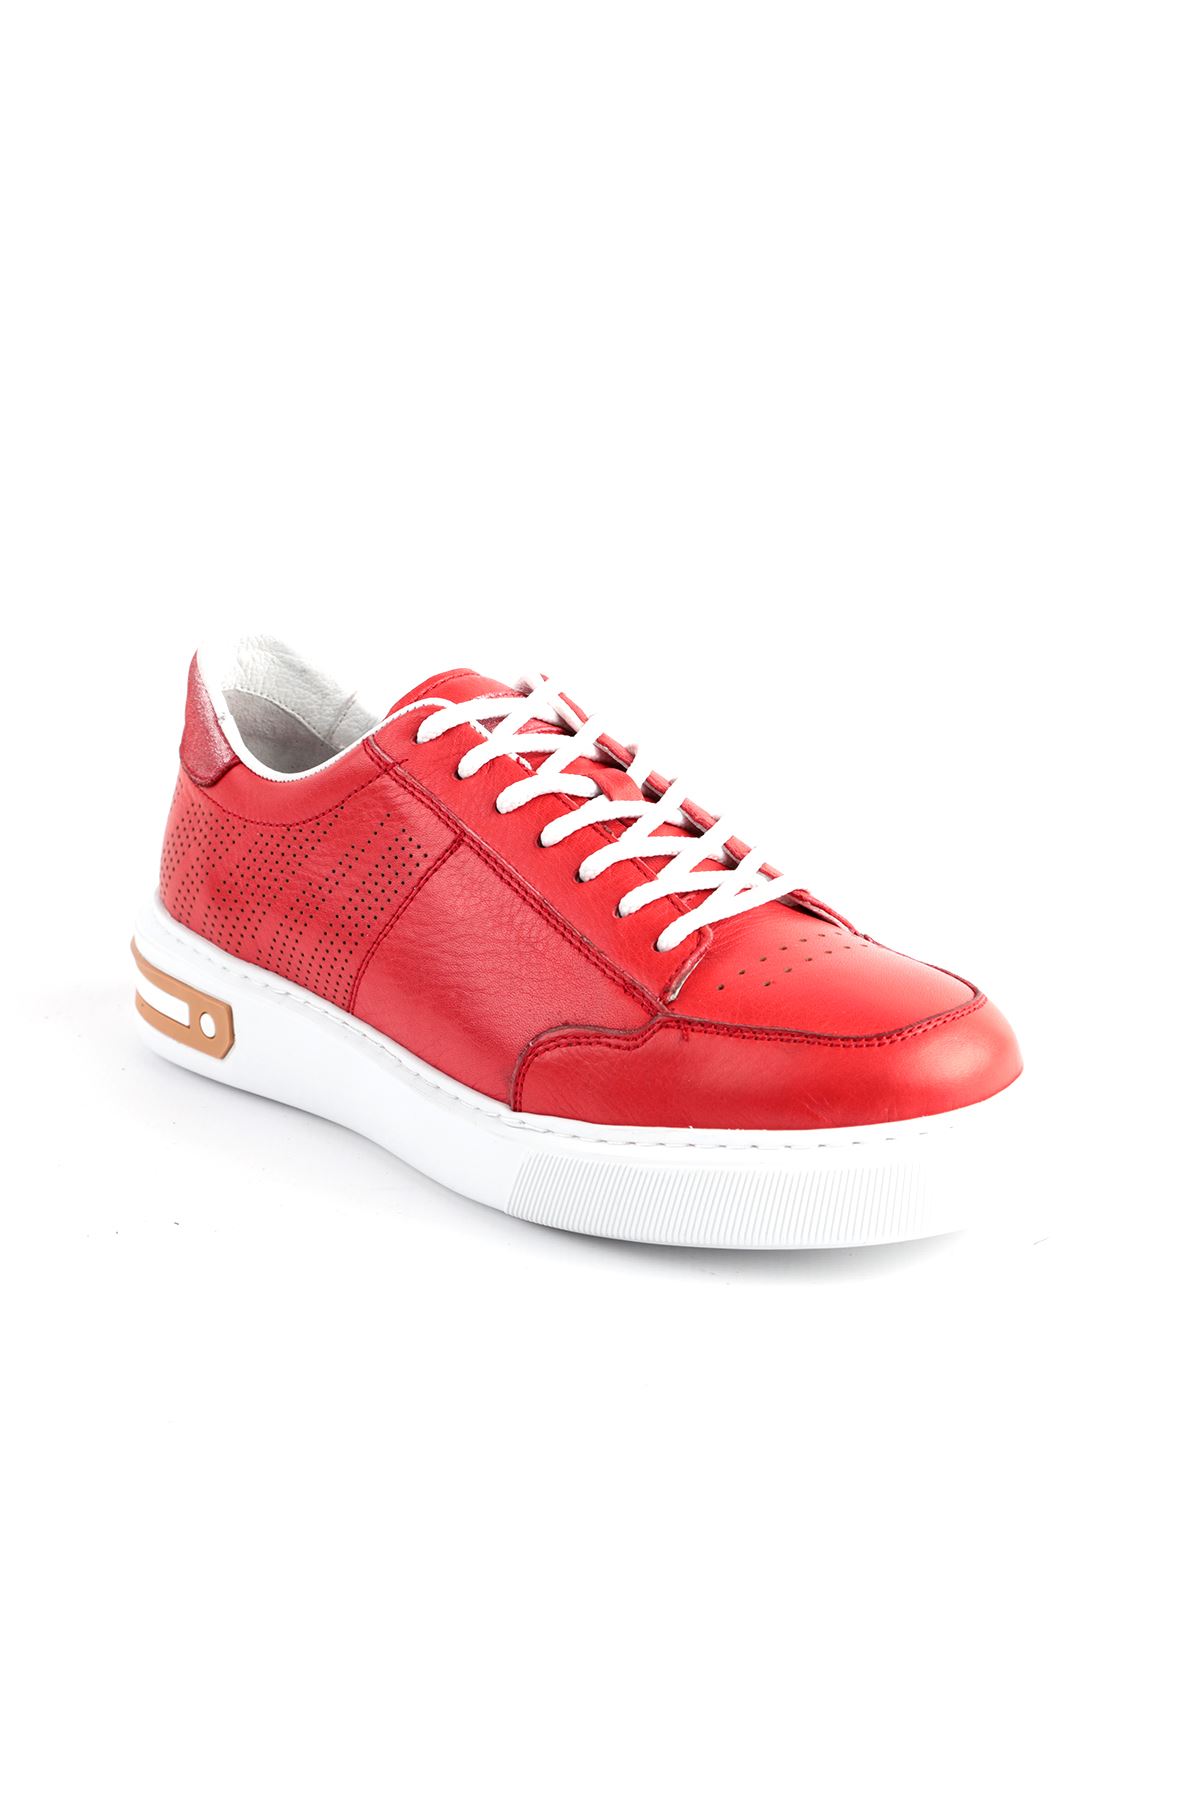 Libero Dİ2034 Kırmızı Spor Ayakkabı 